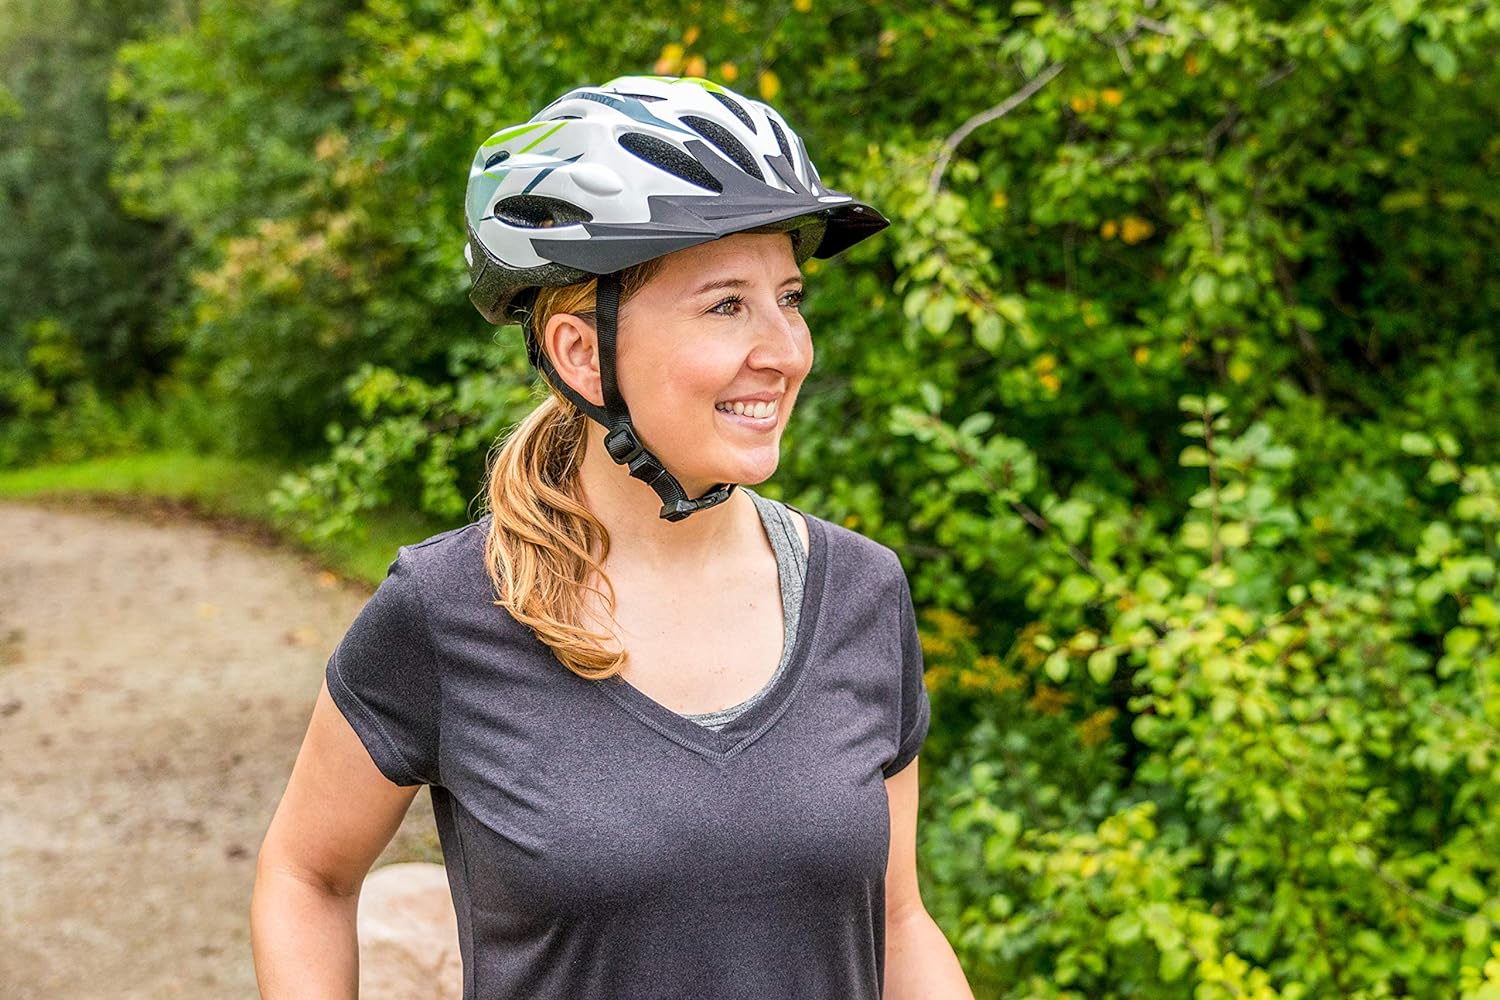 Schwinn Traveler Bike Helmet, Adult and Youth Sizes White/Green, 2 Pack